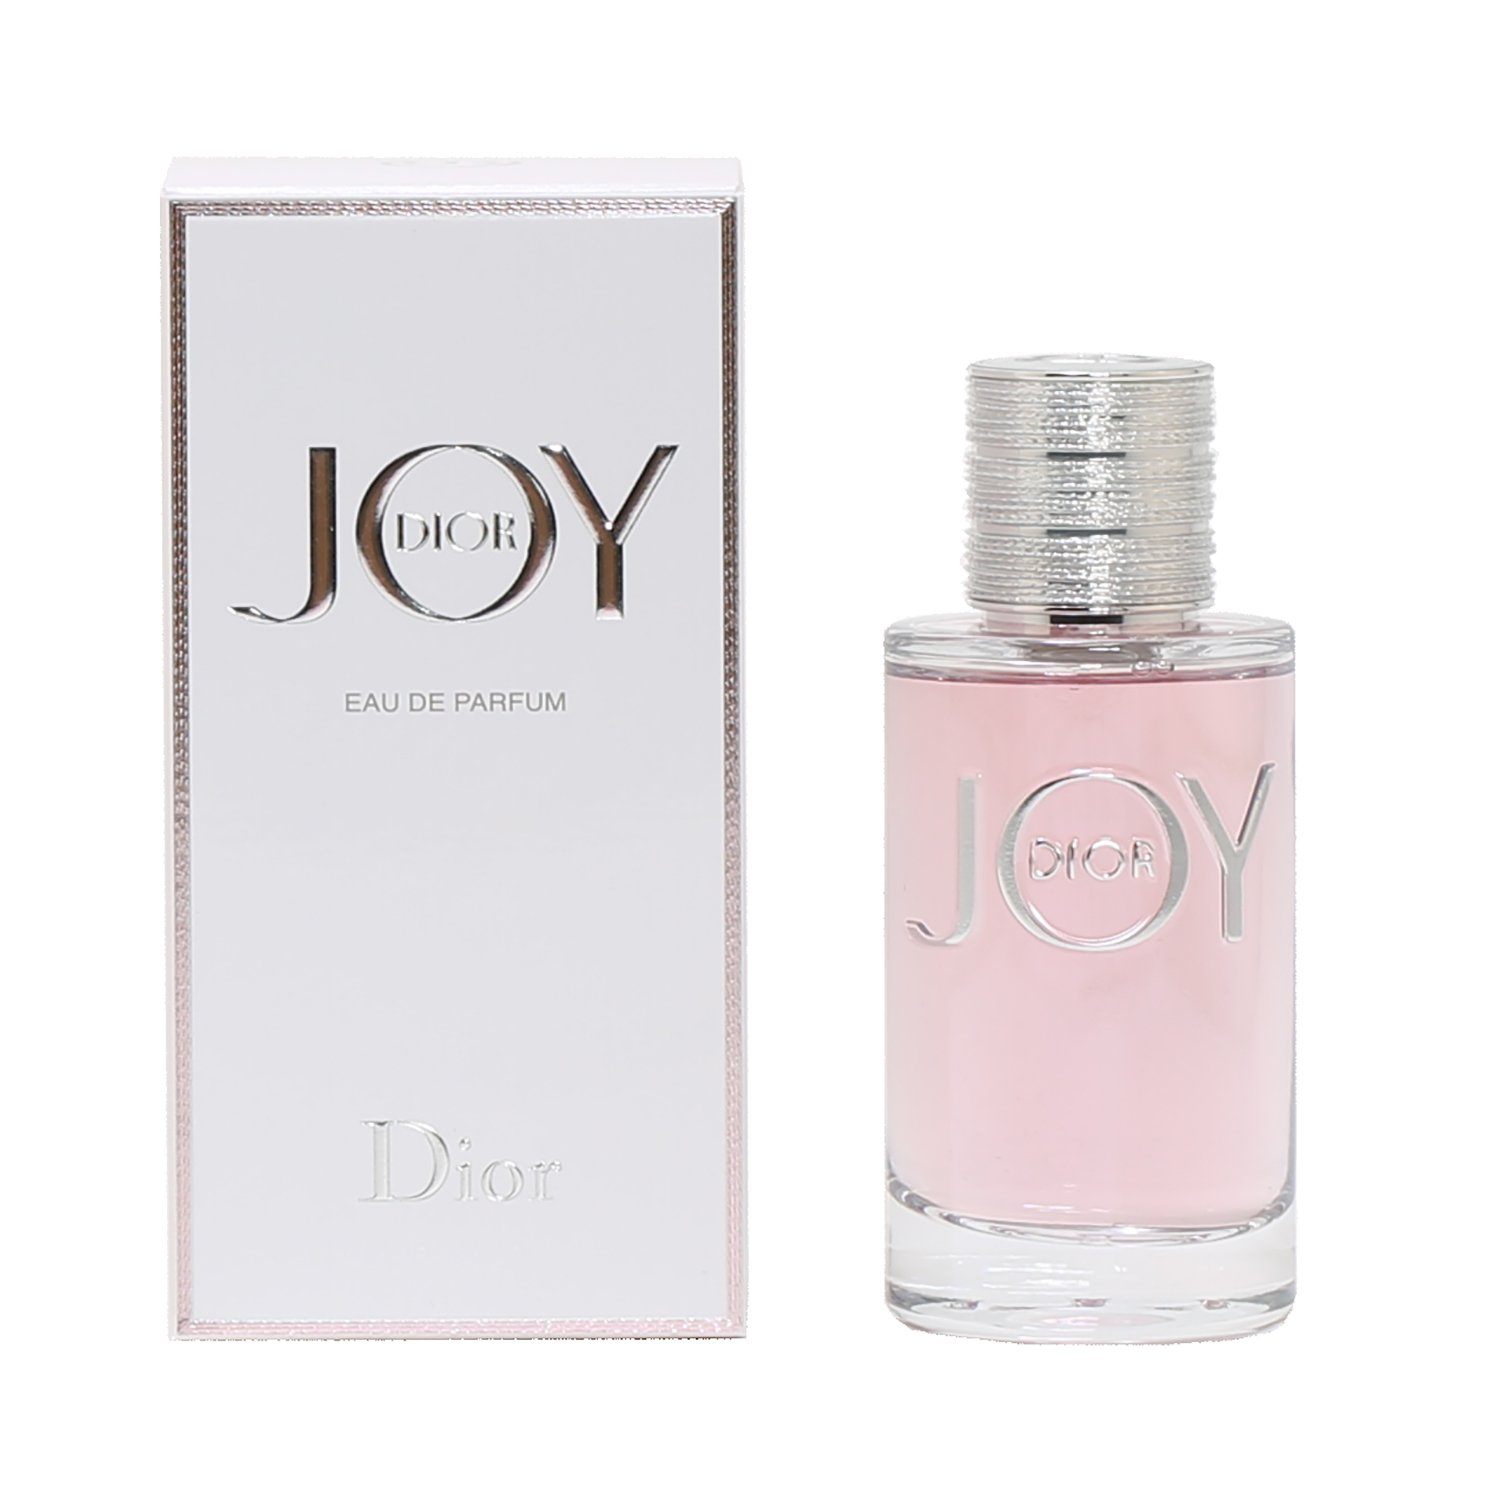 Christian Dior Sauvage Parfum Spray 2 oz